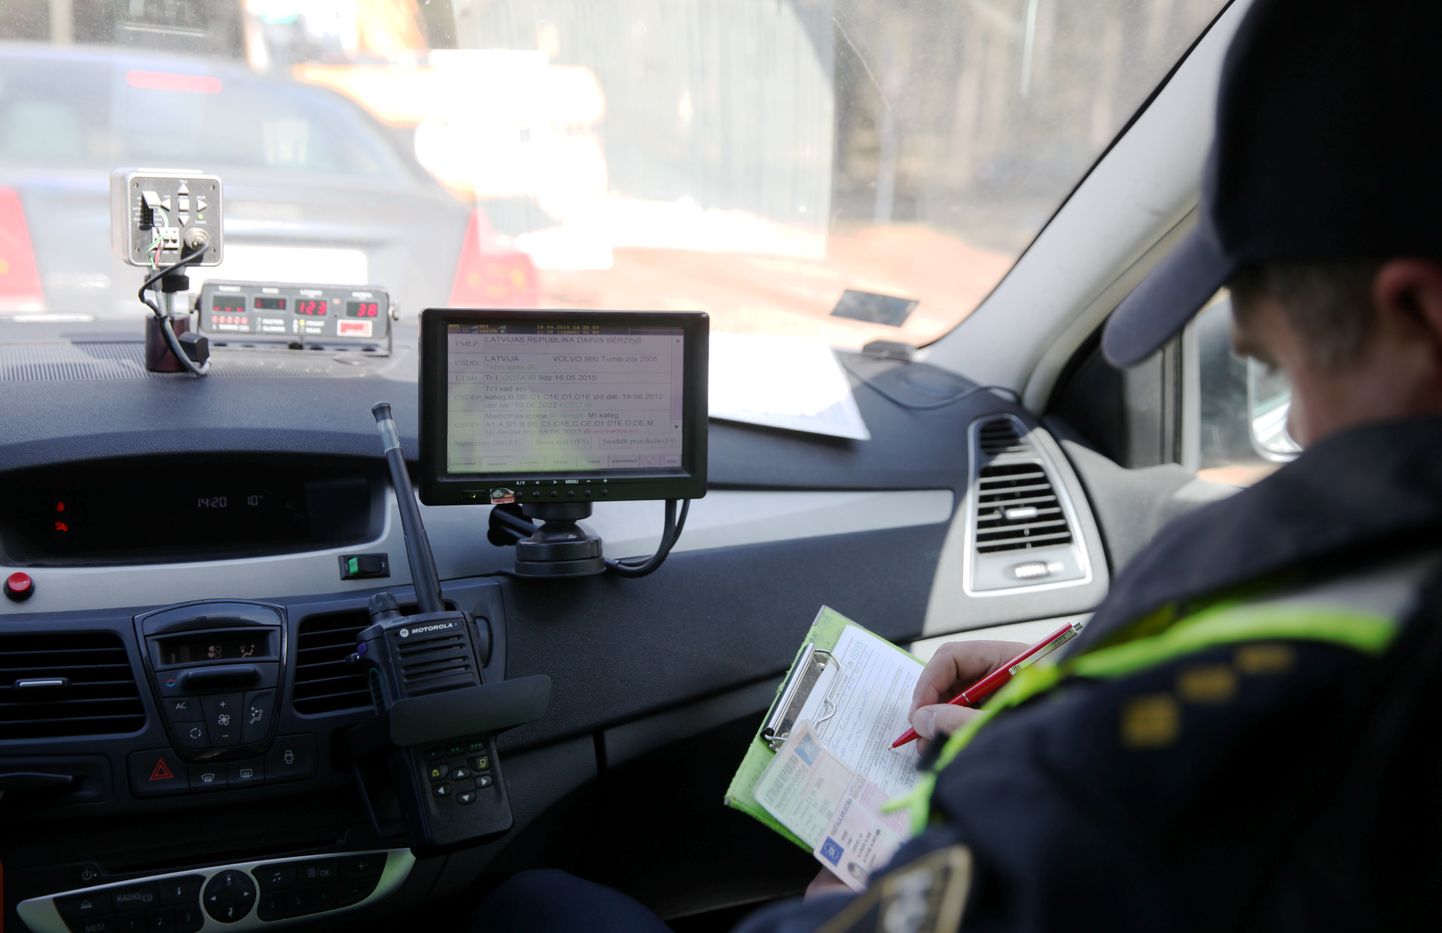 Valsts policists sastāda protokolu automašīnas vadītājam par braukšanas ātruma pārsniegšanu ātruma kontroles maratona laikā, kas Latvijā norisinās pirmo reizi.